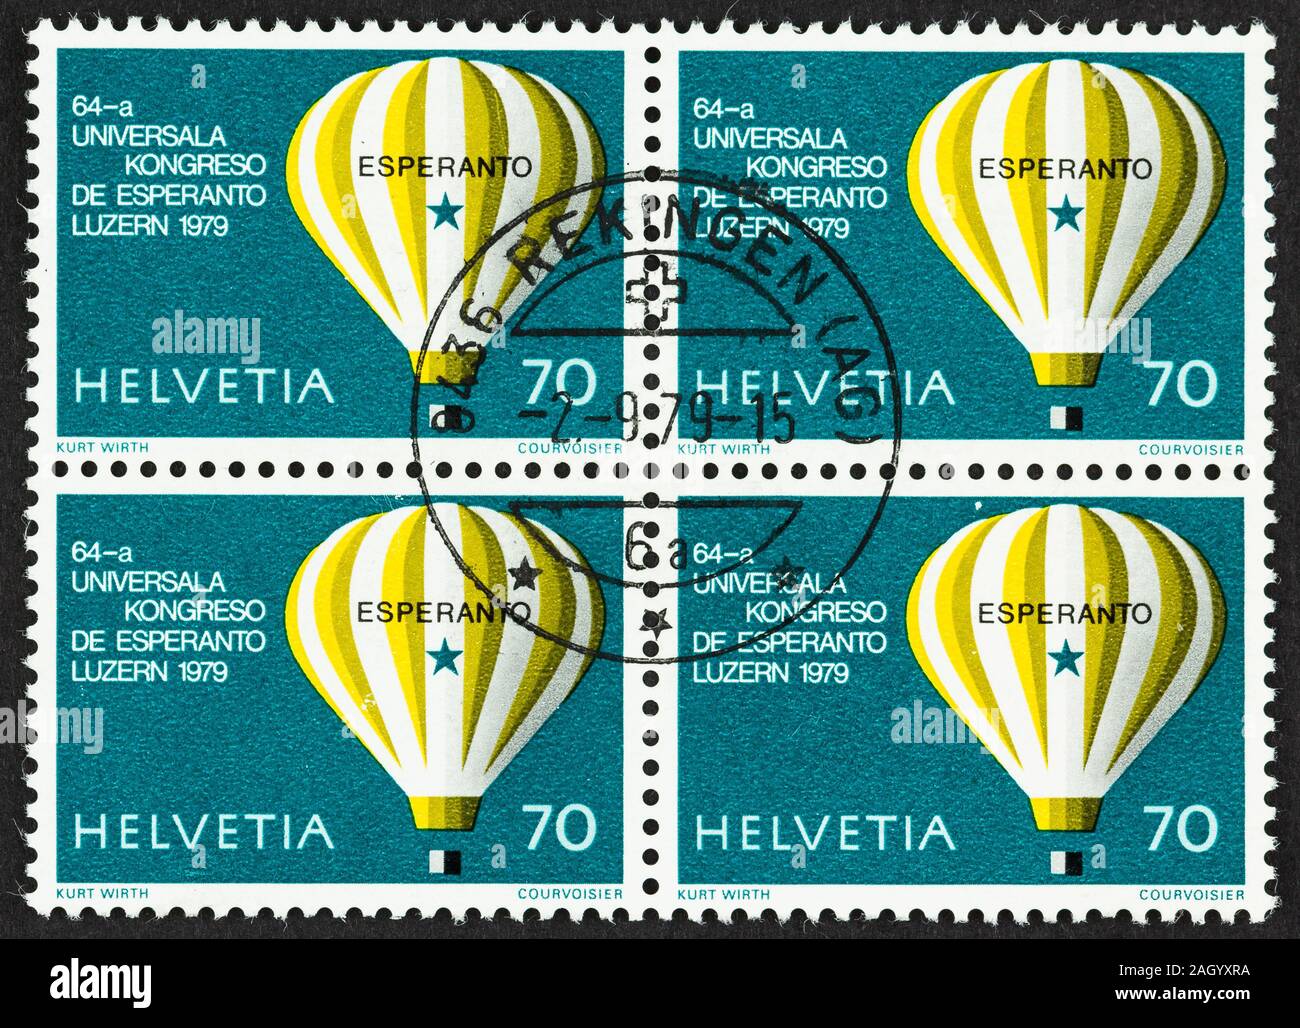 Nahaufnahme von einem Block von 4 70 Rappen Briefmarken 1979 ausgestellt. Commemorative Esperanto-weltkongress Briefmarke mit einem Heißluftballon. Stockfoto